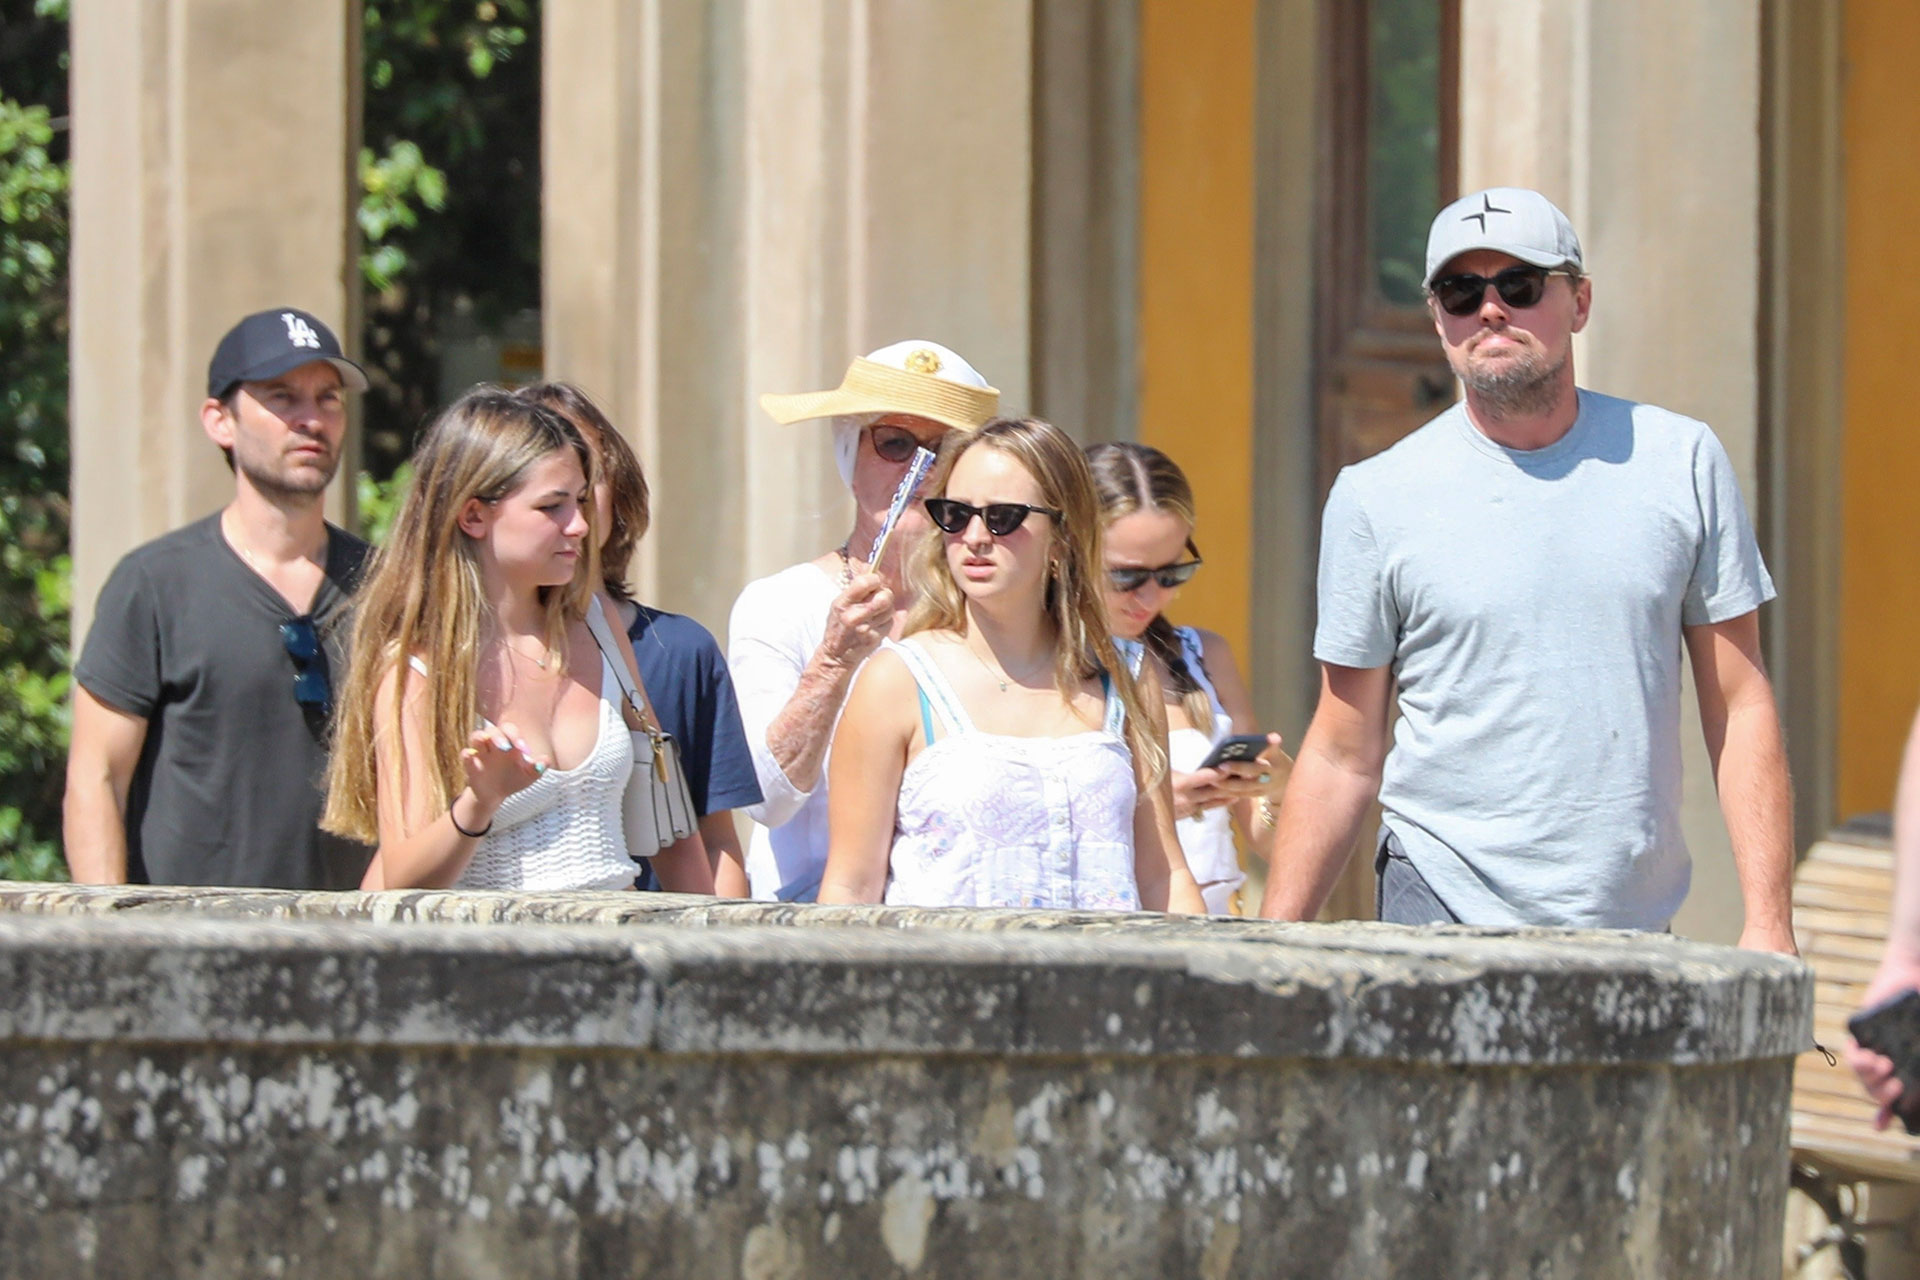 Leonardo DiCaprio continúa disfrutando de sus días de vacaciones en Italia. El actor estuvo en Capri y luego se trasladó a Florencia para disfrutar junto al actor Tobey Maguire y su familia. Durante el paseo, intentó pasar desapercibido luciendo lentes de sol y una gorra